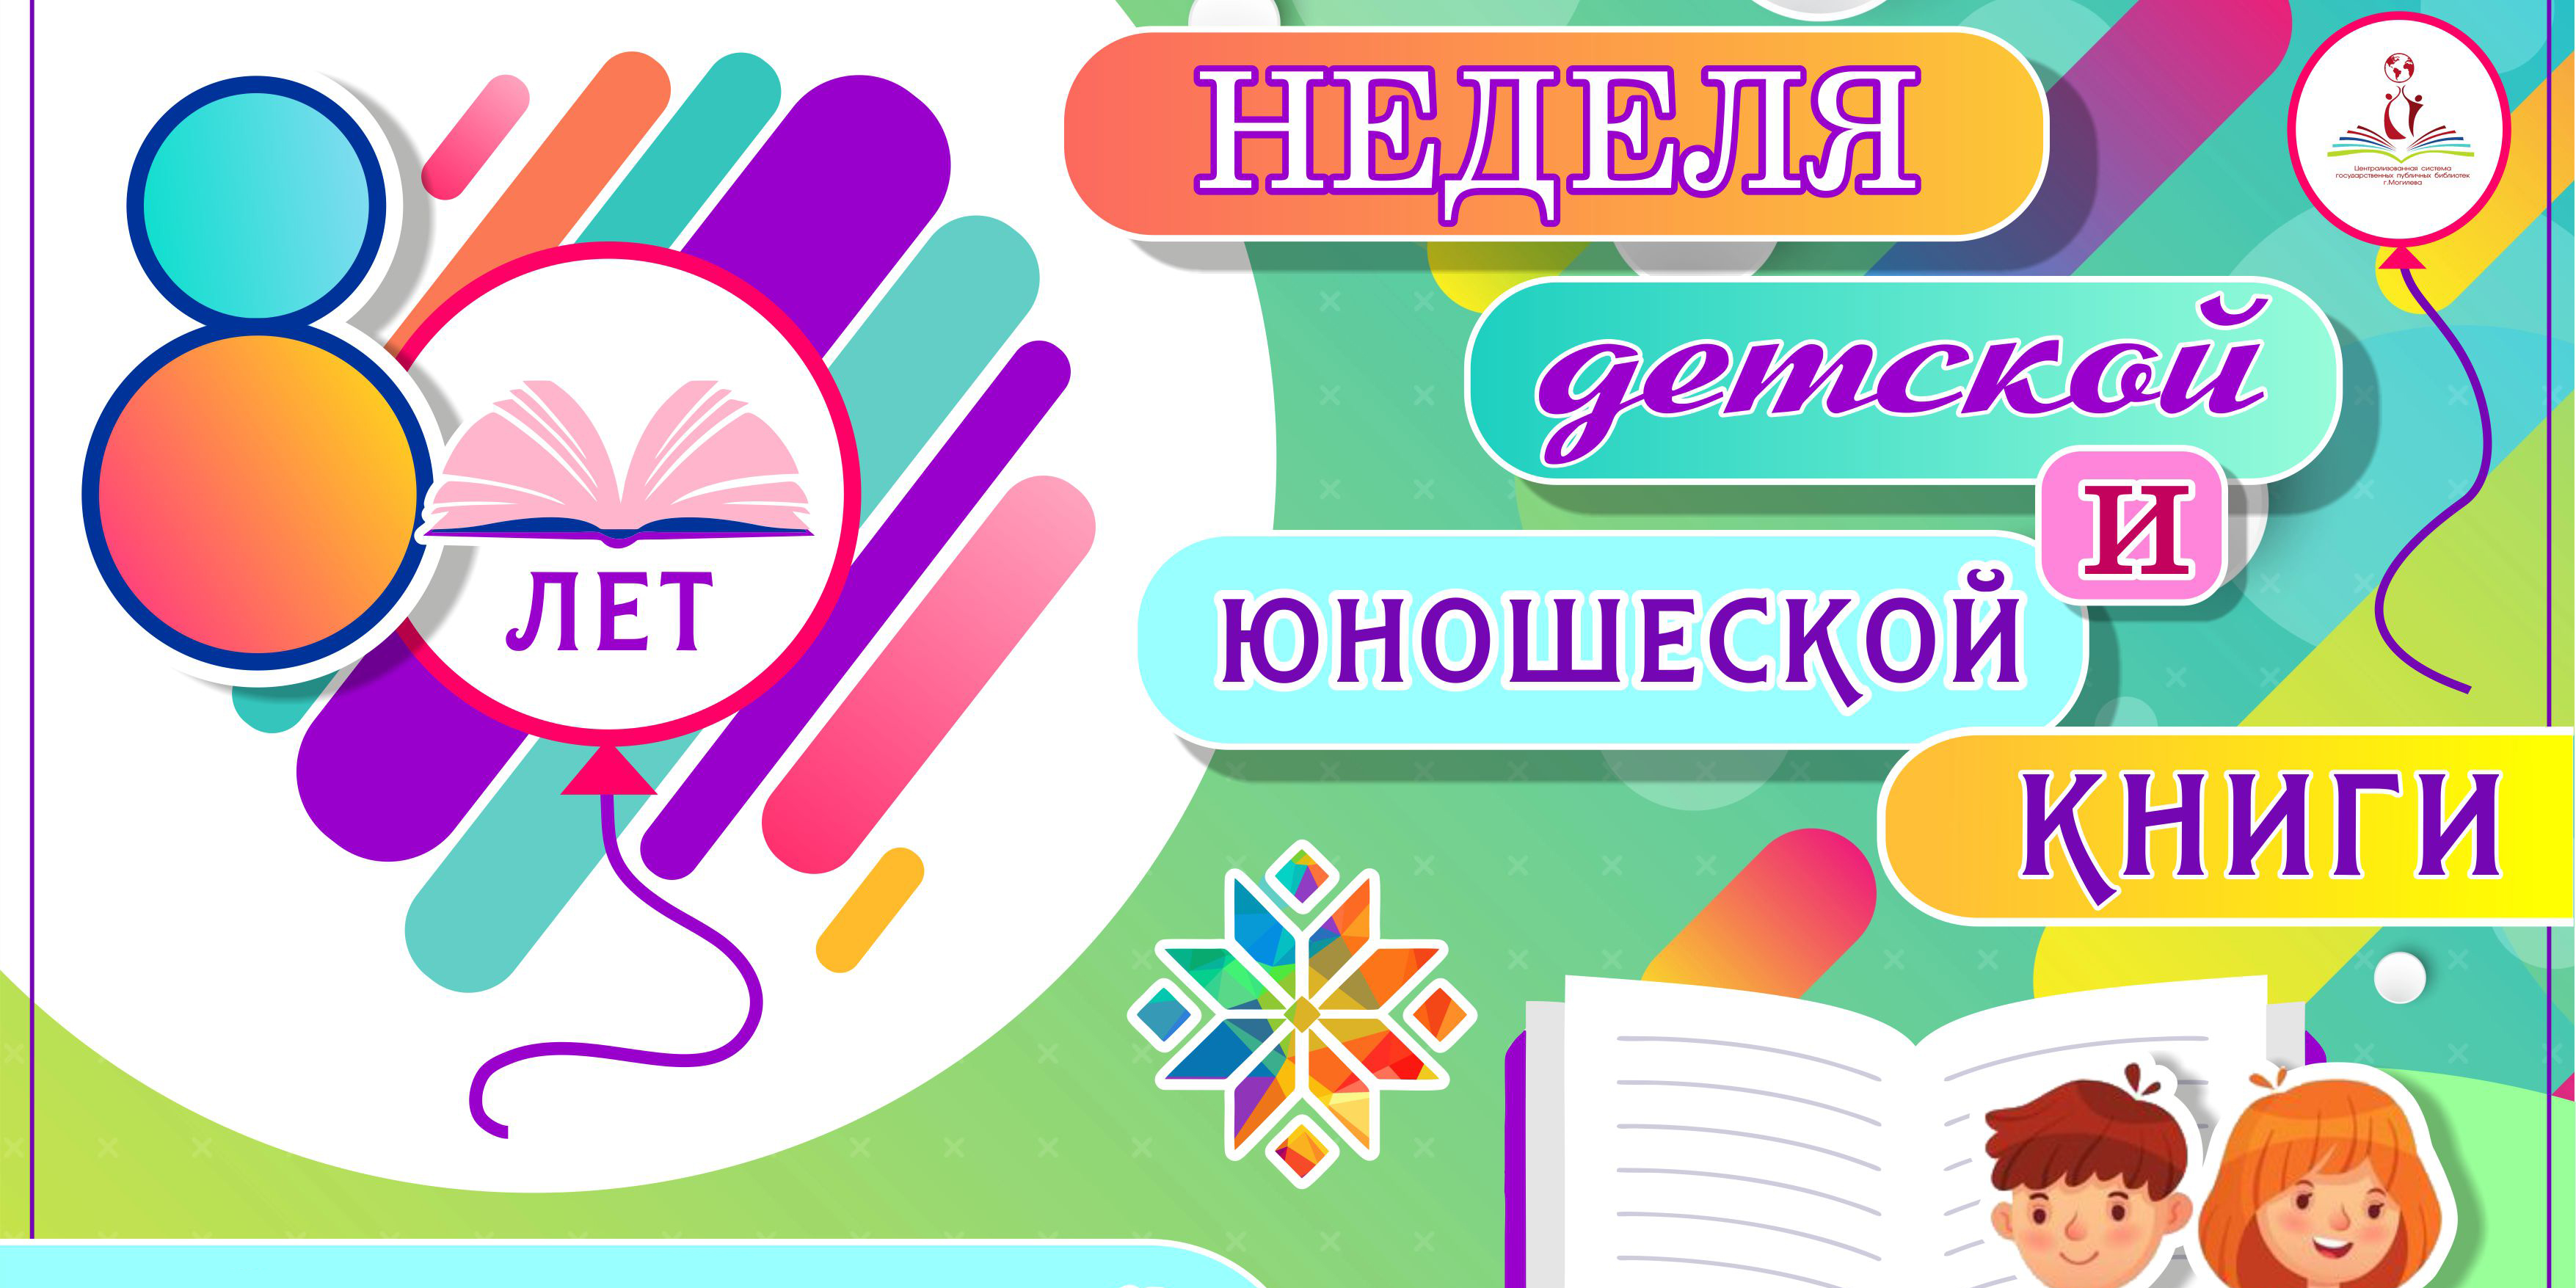 Неделя детской и юношеской книги пройдет в Могилеве с 27 марта по 2 апреля 